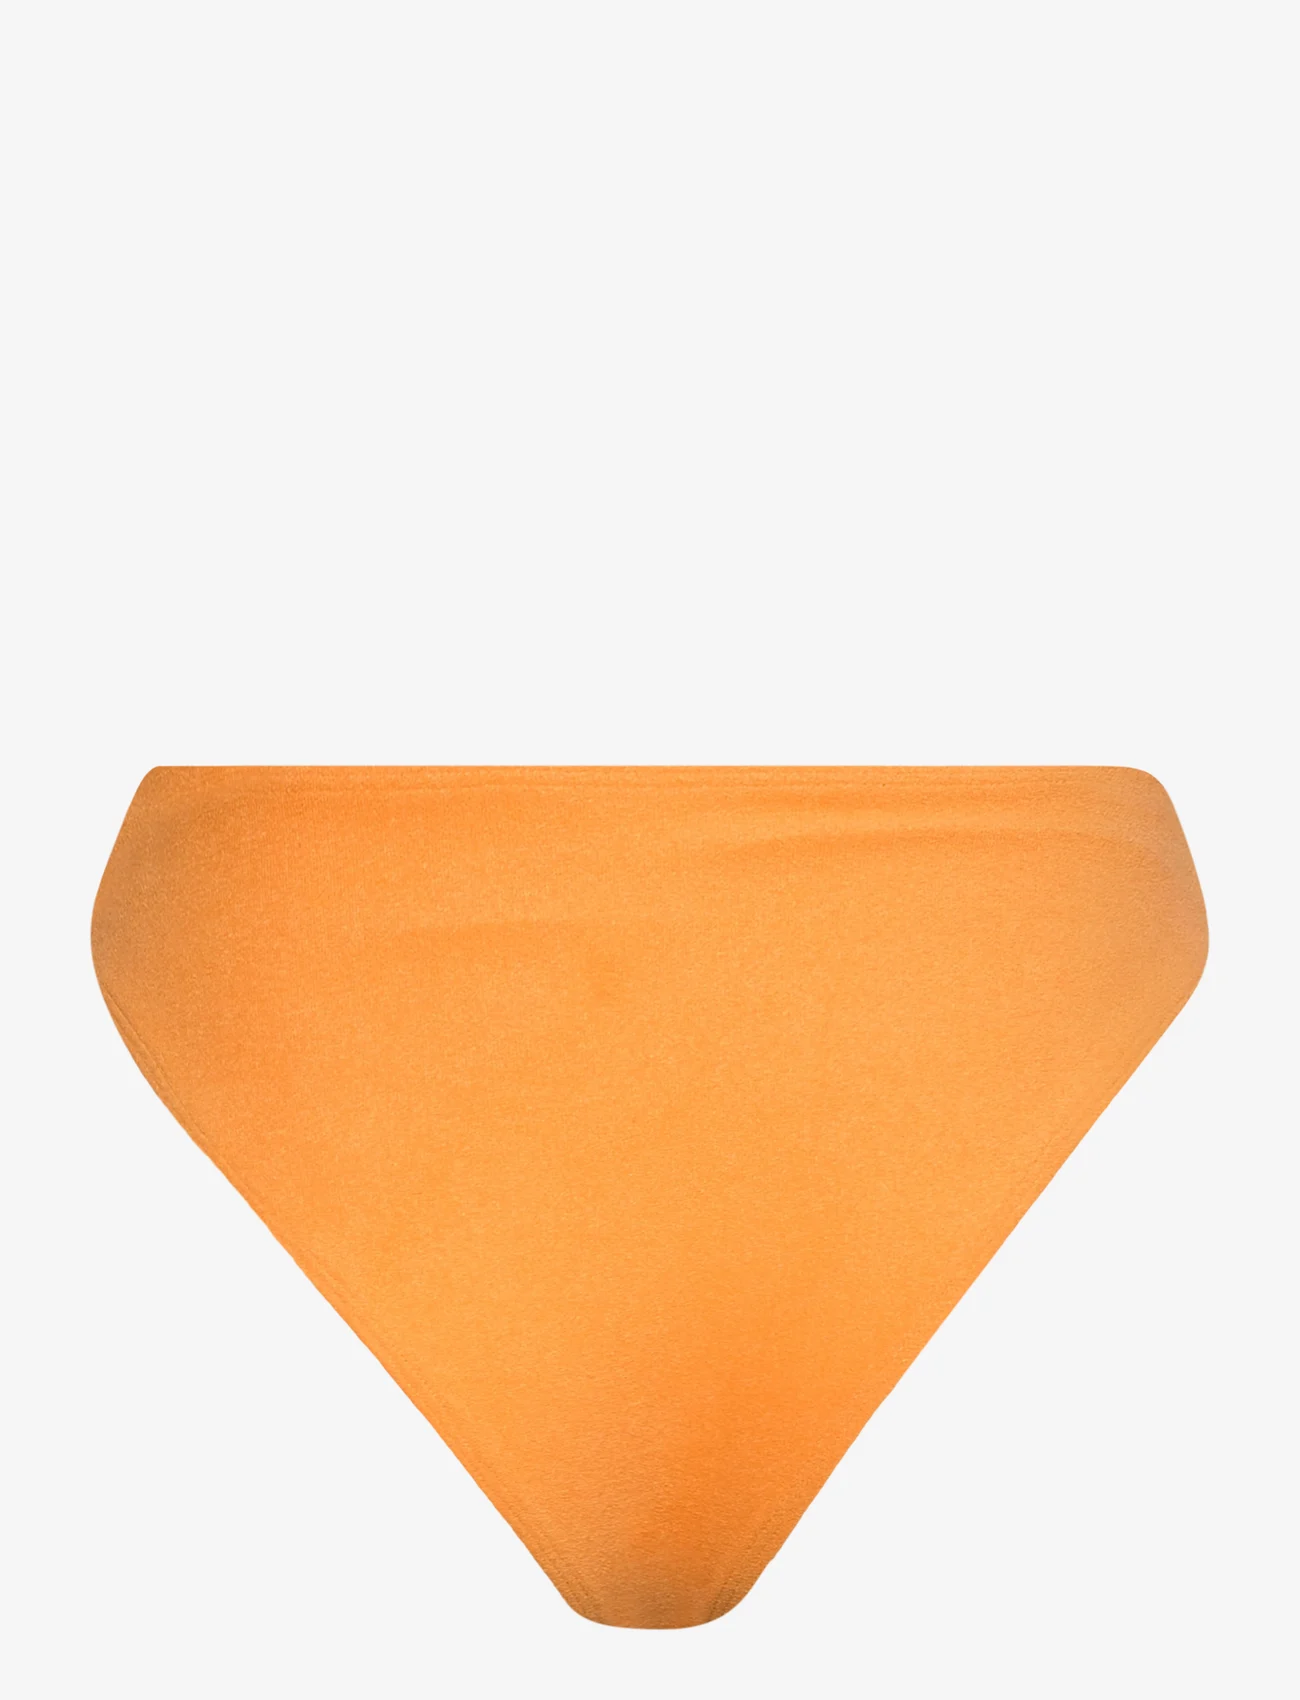 Faithfull The Brand - DYLLA BIKINI BOTTOMS - bikinitruser med høyt liv - plain orange towelling - 1